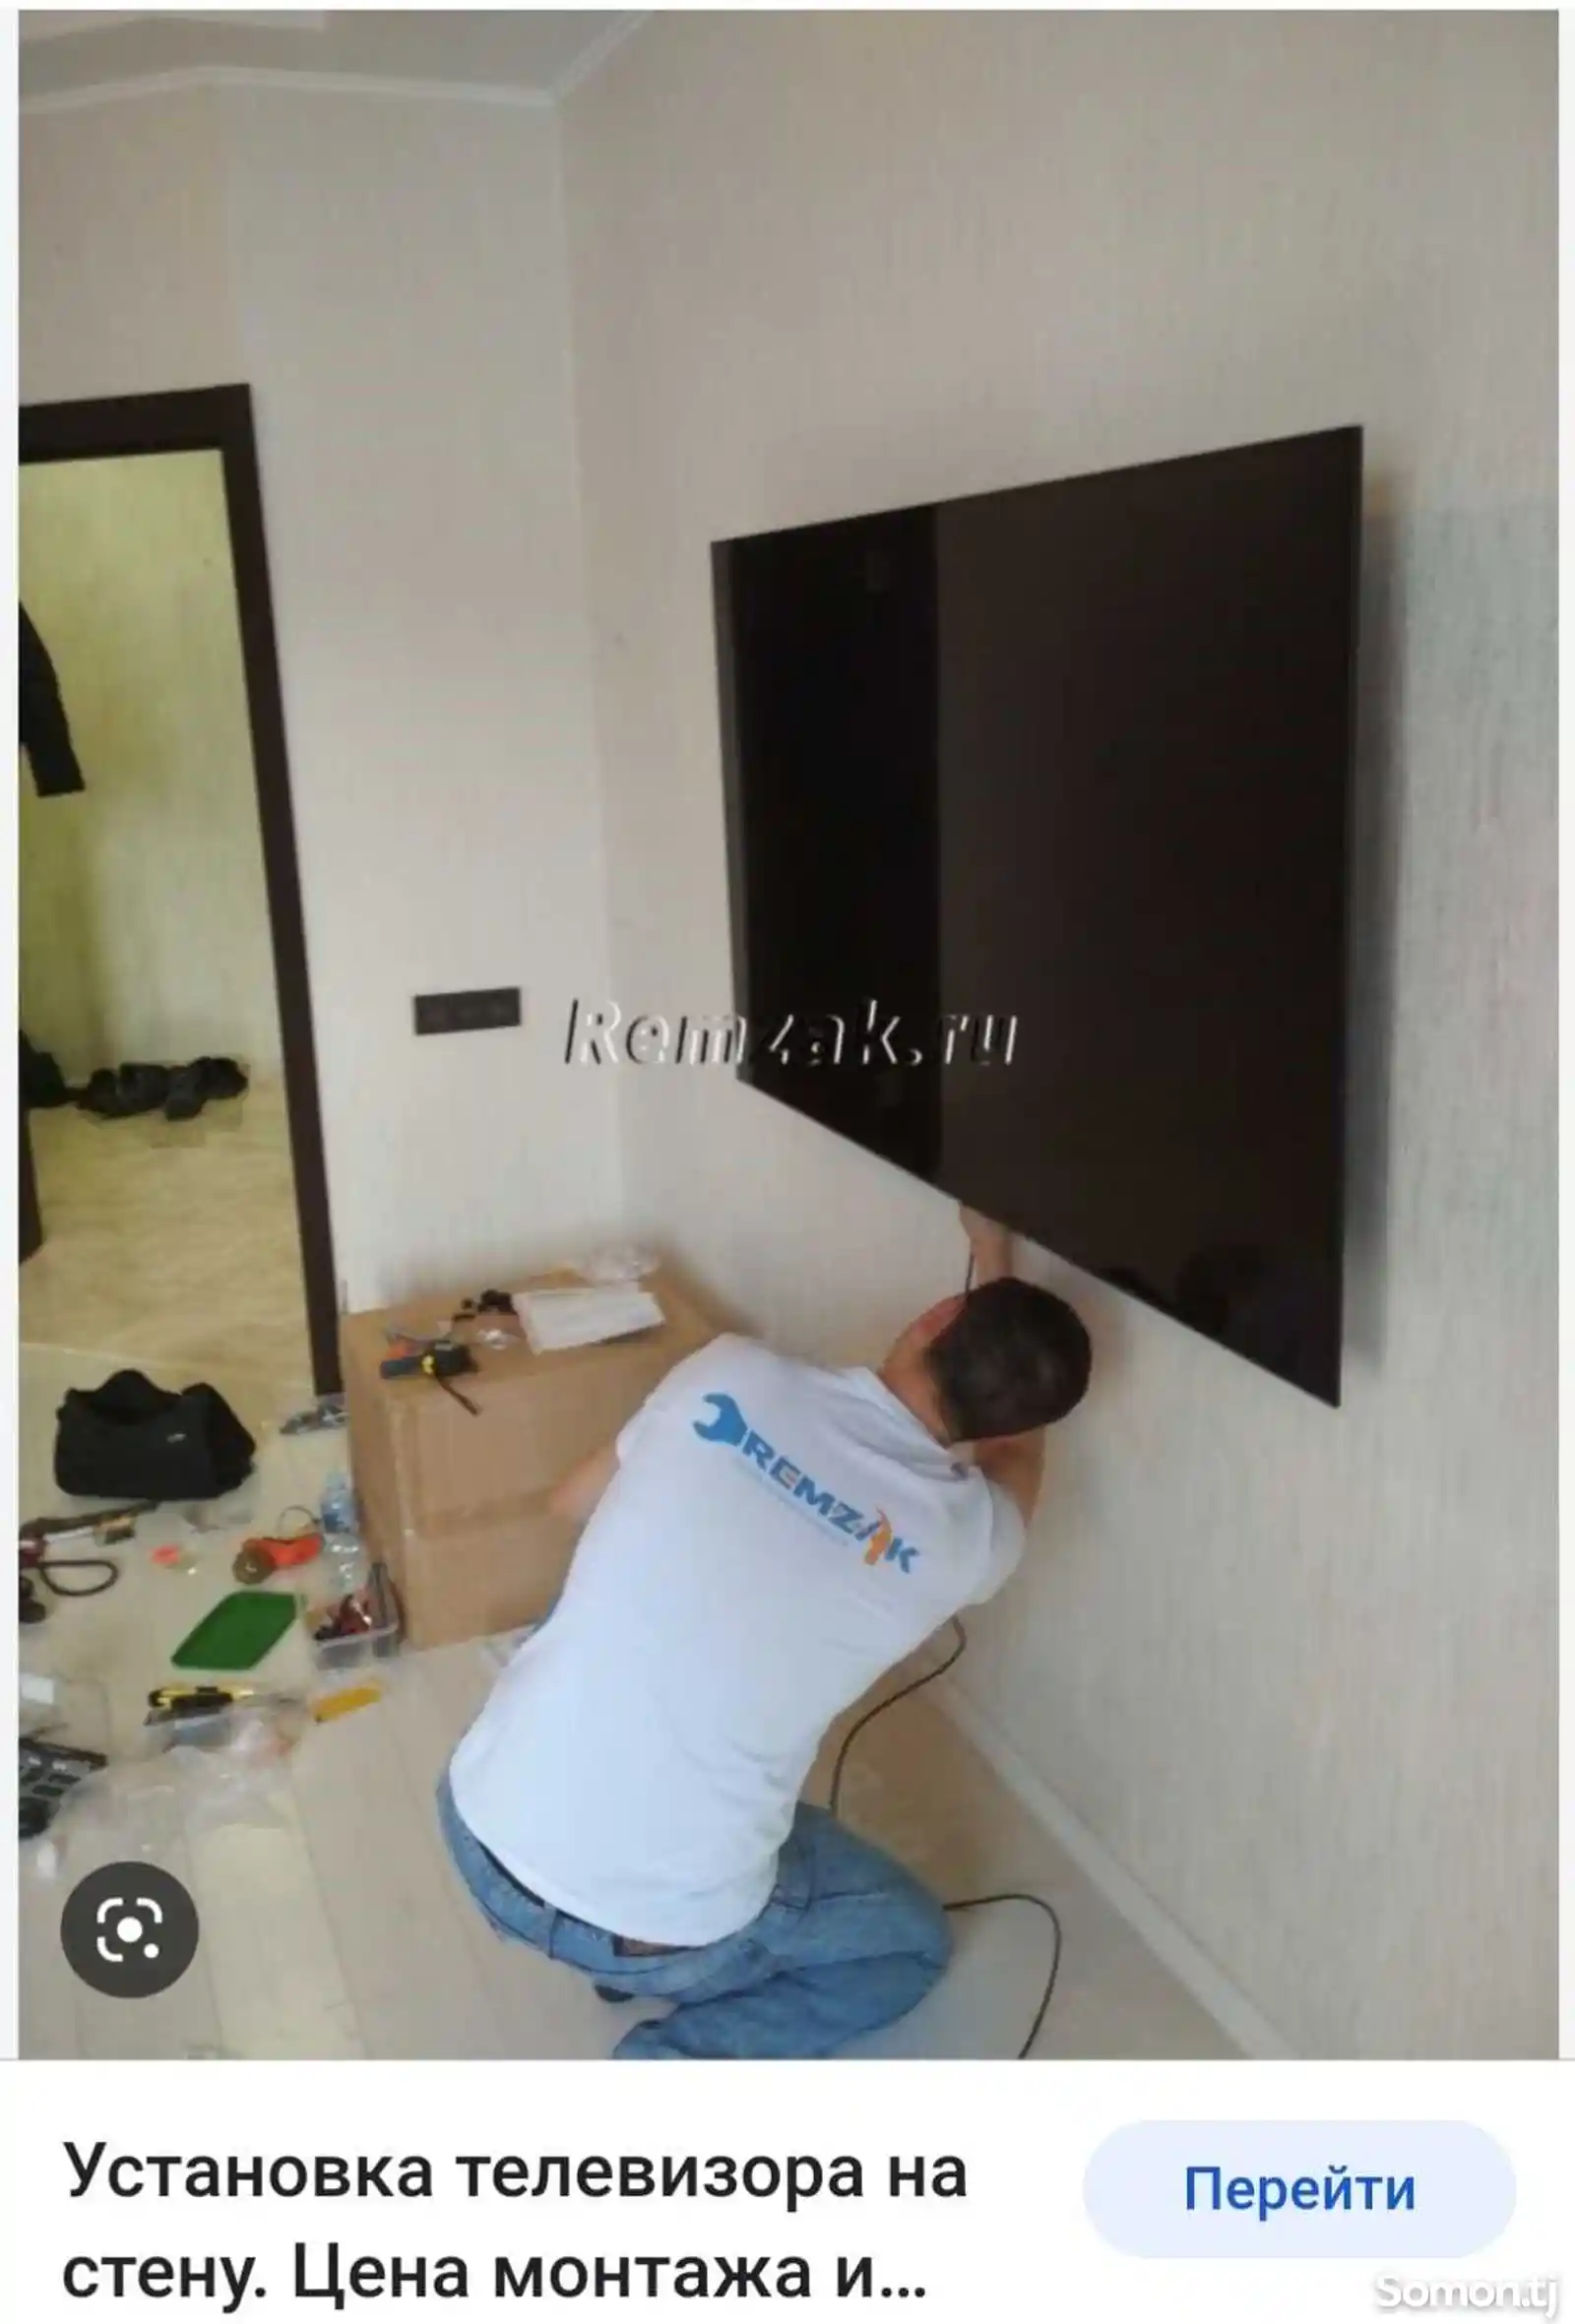 Установка телевизор на стену